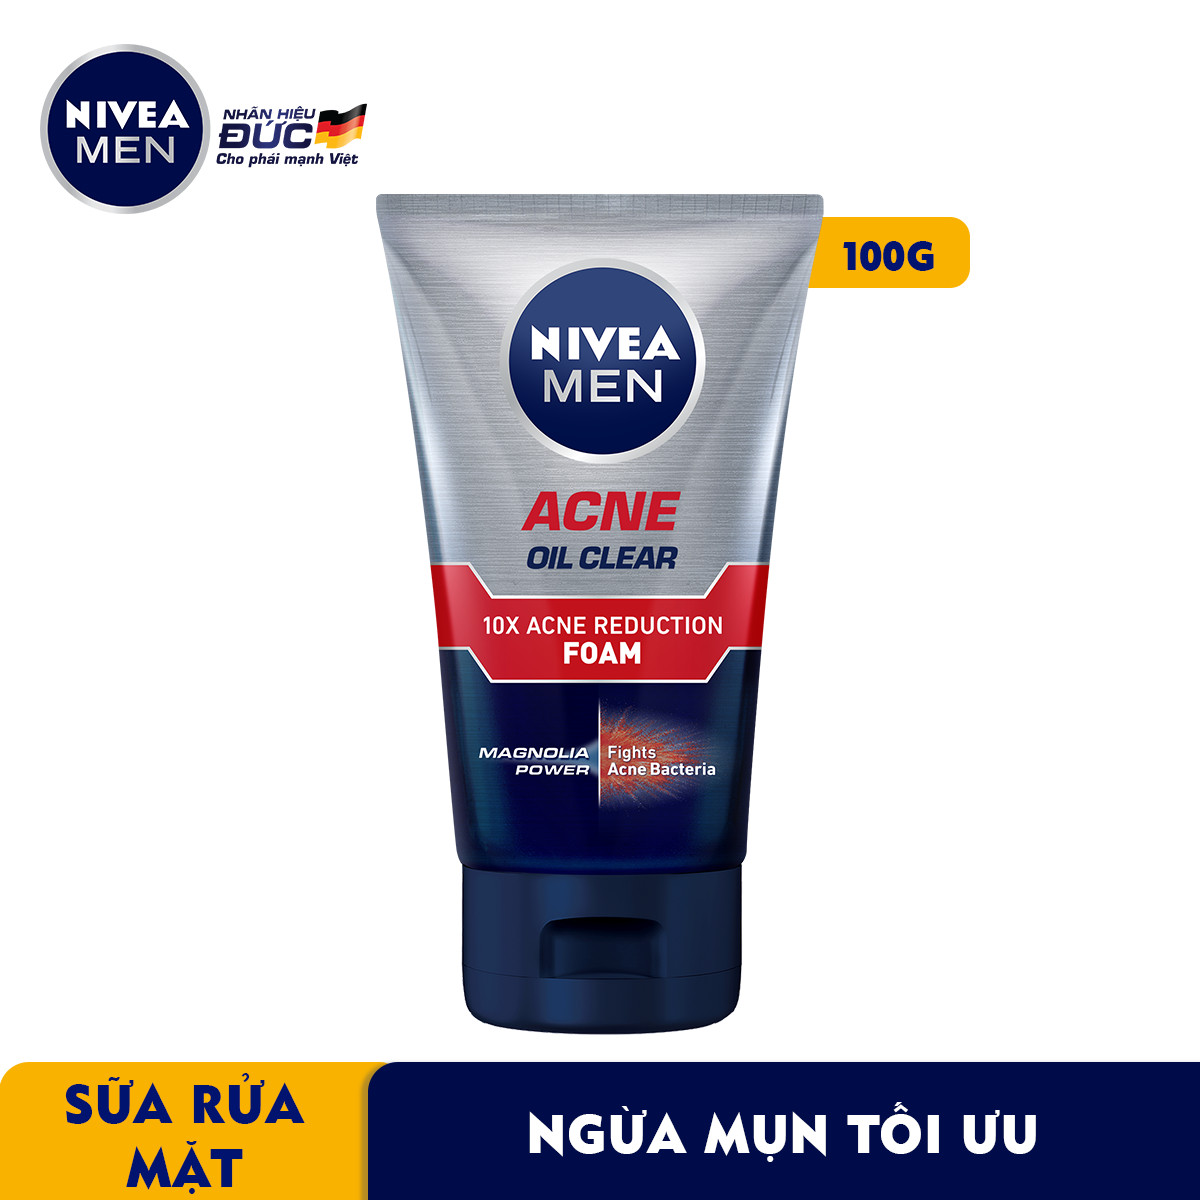 Sữa Rửa Mặt NIVEA MEN Acne Oil Clear (100 G)